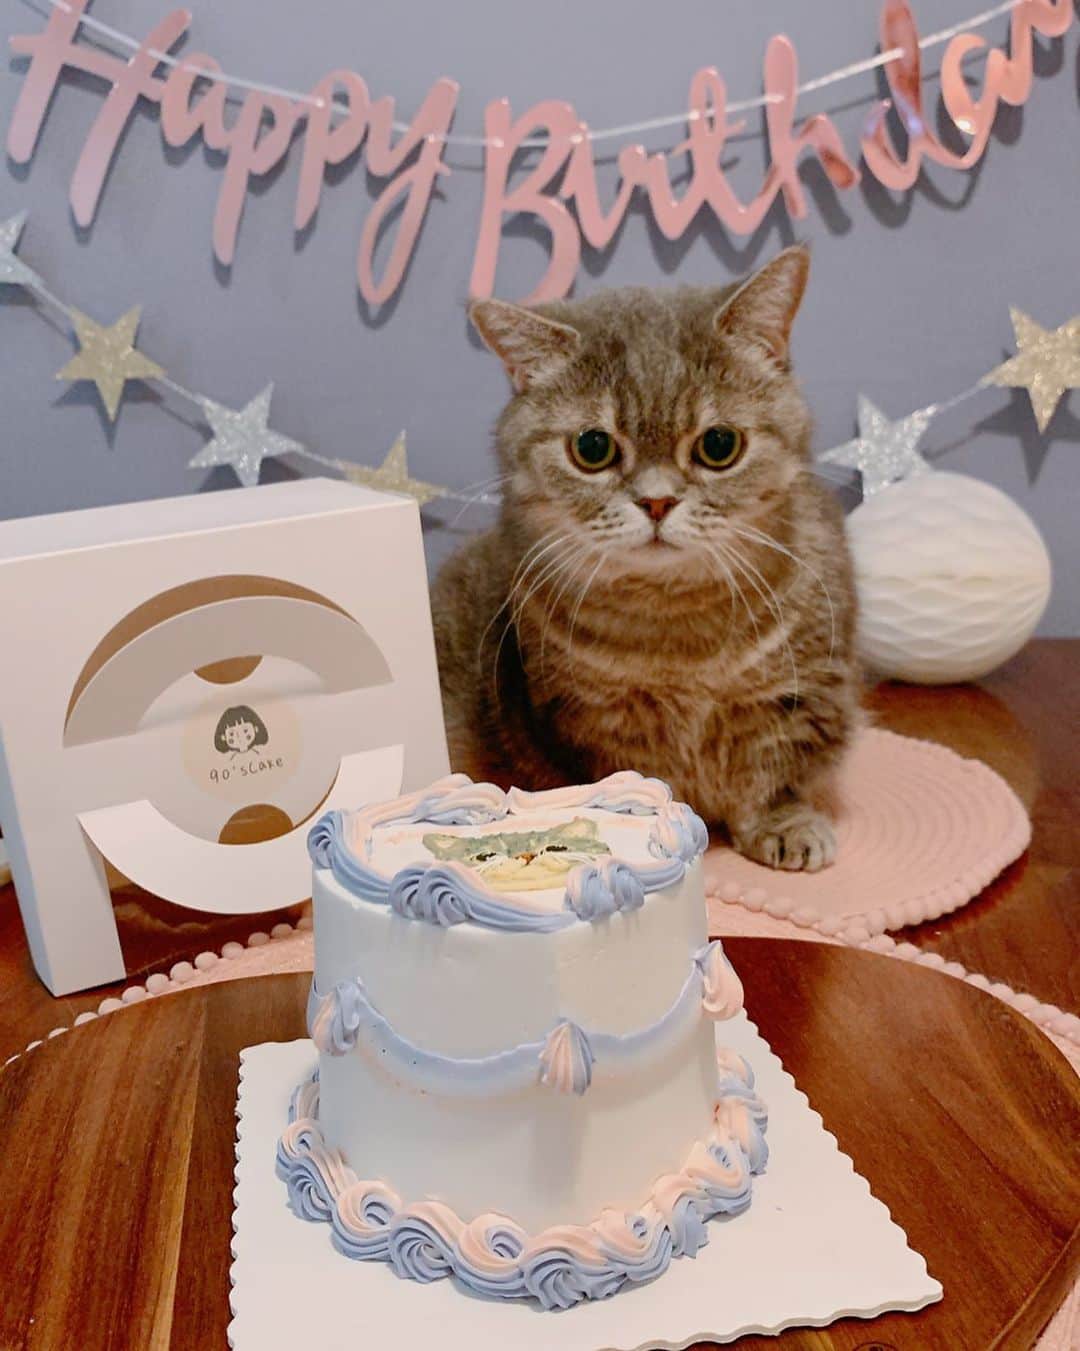 Little & Miloのインスタグラム：「( ⁽❛⁾ː⁽❛⁾ ) ♡⃛ ℍ𝕒𝕡𝕡𝕪 𝕓𝕚𝕣𝕥𝕙𝕕𝕒𝕪 𝕥𝕠 𝕃𝕚𝕥𝕥𝕝𝕖。。。。𝖼𝖾𝗅𝖾𝖻𝗋𝖺𝗍𝗂𝗈𝗇 𝖿𝗈𝗋 𝟣𝟣 𝗒𝖾𝖺𝗋𝗌 𝗈𝗅𝖽, Ꭲʰᵃⁿᵏˢ ϋ 𝖿𝗈𝗋 ♡ @90s_cake_ ～ ♡⃛   #LittleMilo #littlemilo #マンチカン #短い手足 #munchkin #munchkincat #生日快樂 #ハッピーバー #happybirthday #猫のいる幸せ #猫のいる生活 #猫のいる暮らし  #猫好きな人と繋がりたい #lecreuset #lecreusethk #lecreusetjapon #ルクルーゼ #lecreusetlove  Instagram: https://www.instagram.com/little_milo_munchkin Facebook: http://facebook.com/i.am.little.milo Twitter: https://twitter.com/i_am_littlemilo」